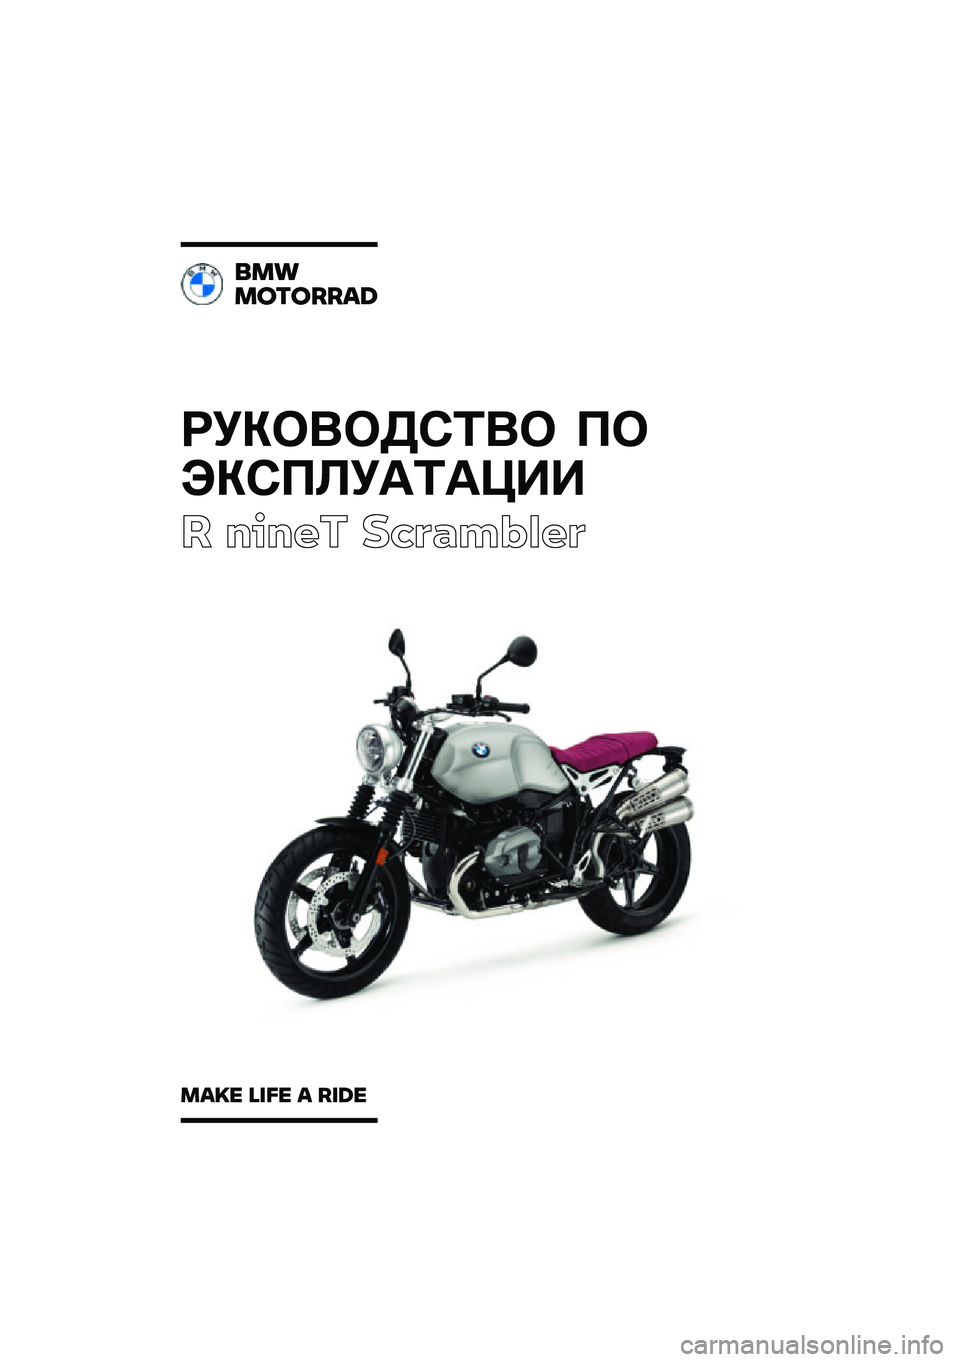 BMW MOTORRAD R NINE T SCRAMBLER 2021  Руководство по эксплуатации (in Russian) ��������\b�	�� �
�
���\b�
�\f��
�	�
���
� ����� ��\b�	�
��\f�
��	
���
�������\b�	
��\b�
� �\f�
�� �\b ��
�	� 